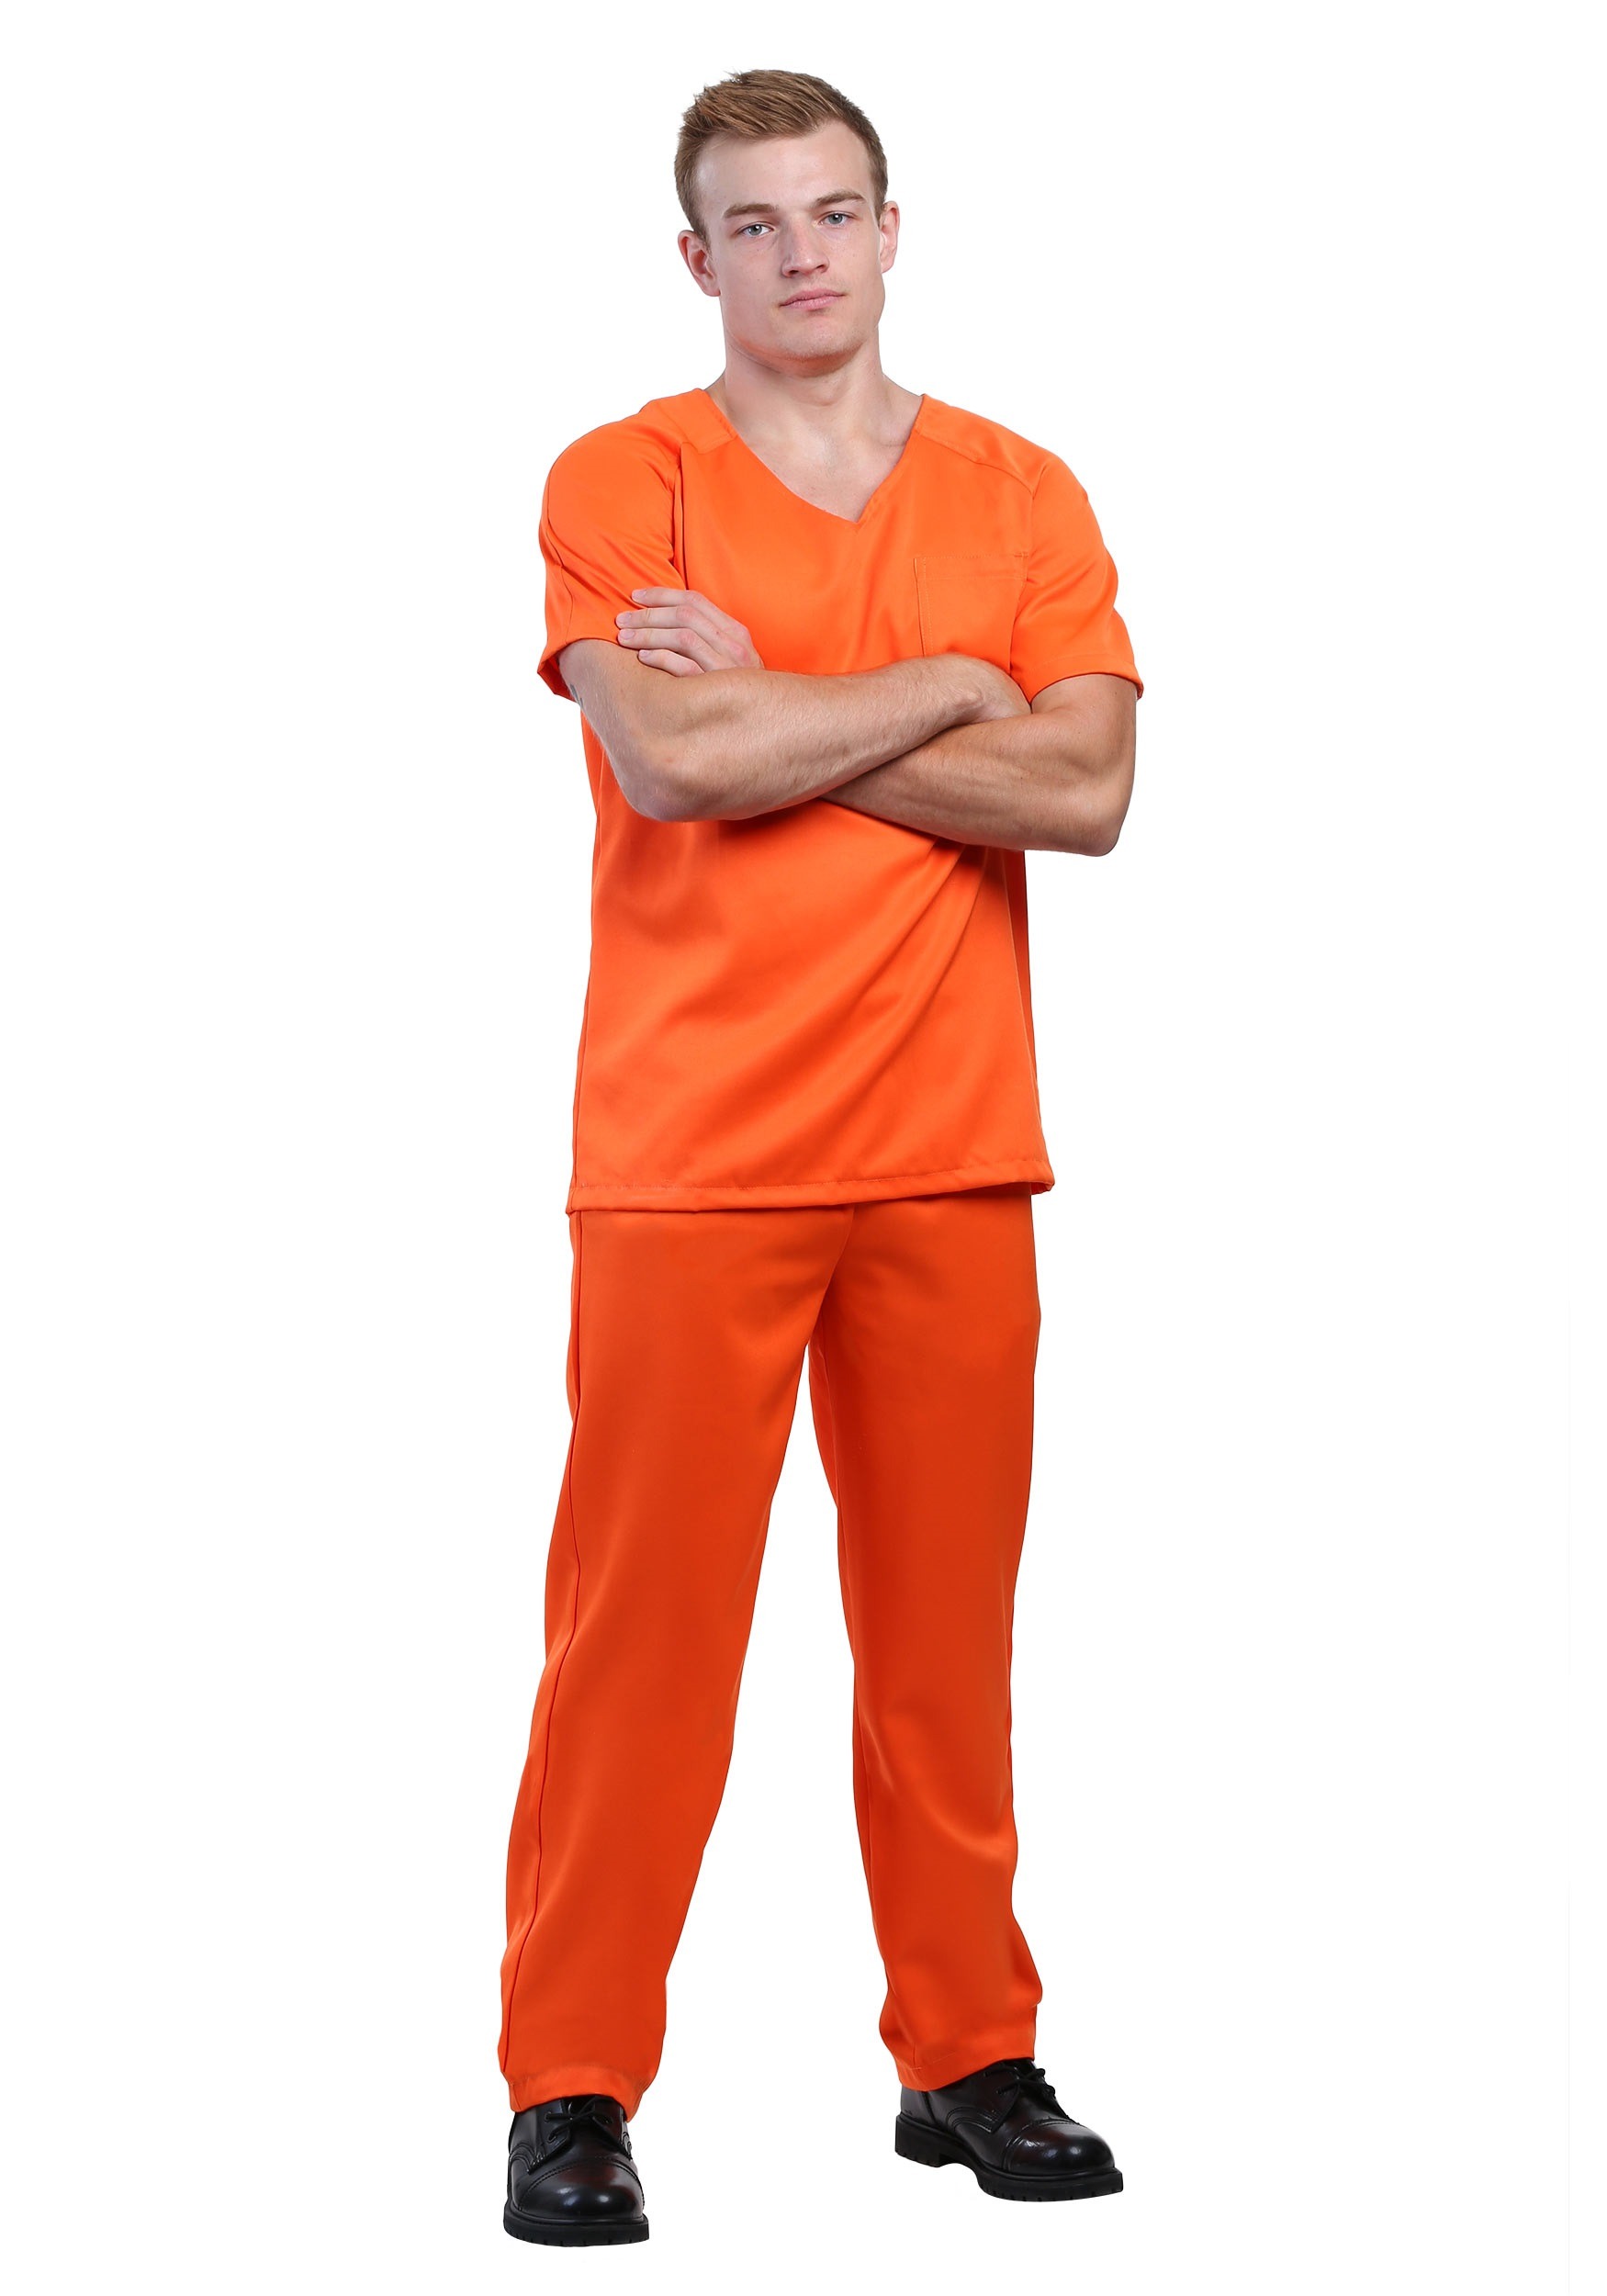 Men’s Orange Prisoner Costume